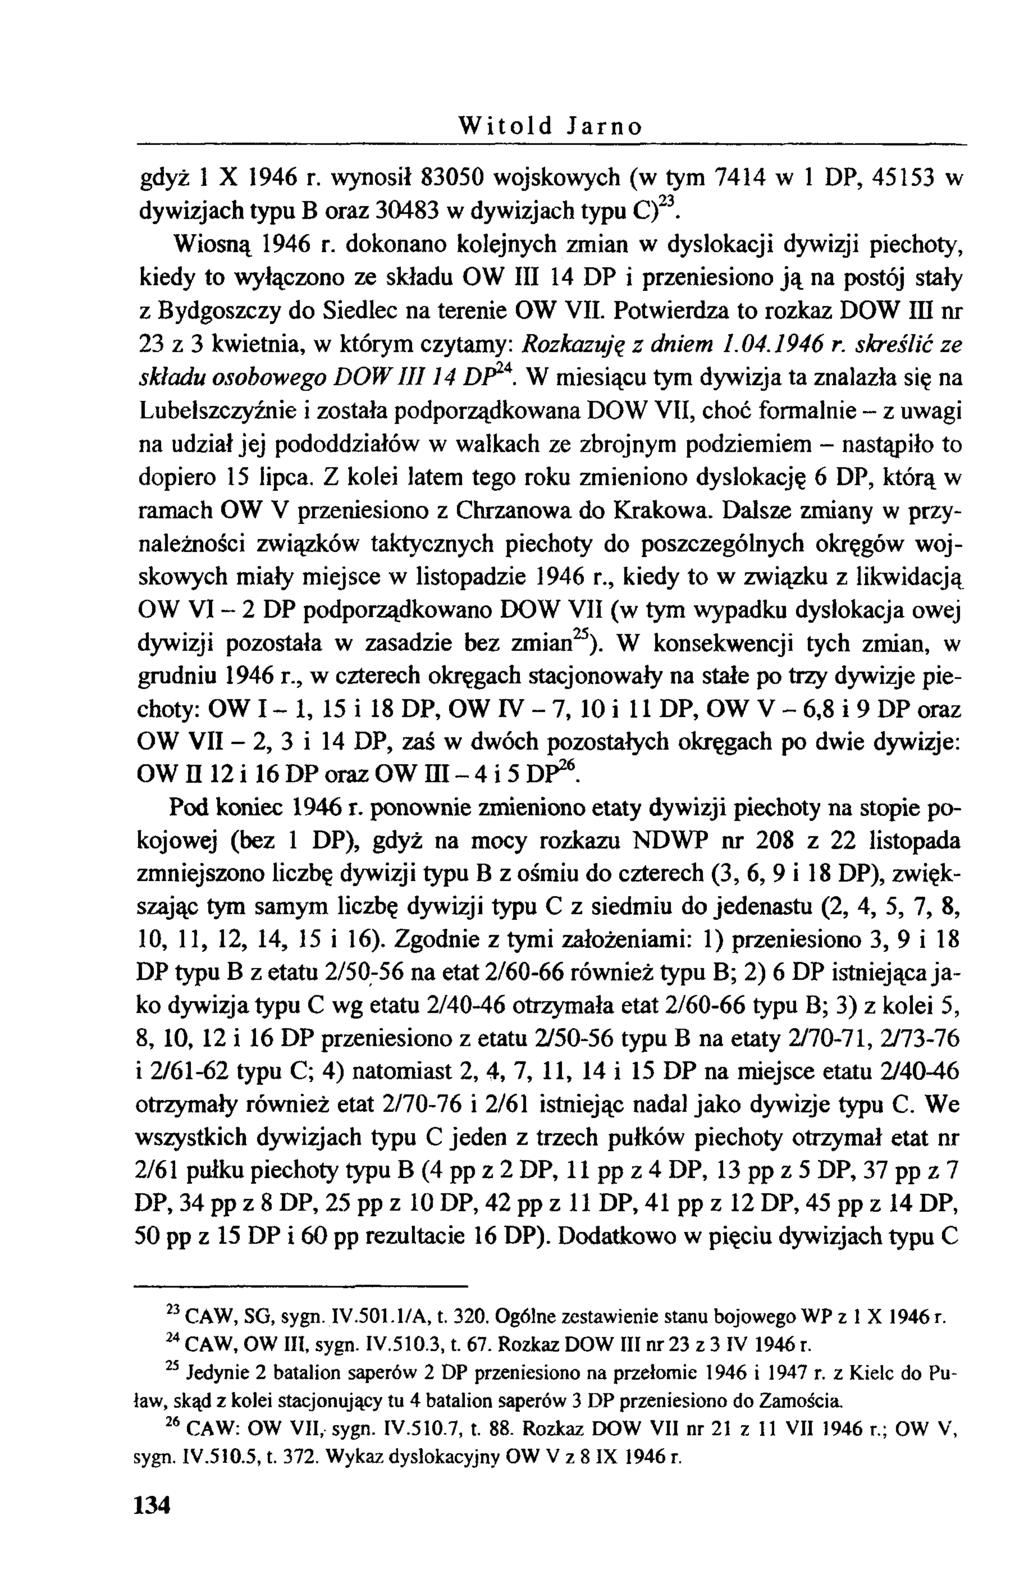 W itold Jarno gdyż 1 X 1946 r. wynosił 83050 wojskowych (w tym 7414 w 1 DP, 45153 w dywizjach typu B oraz 30483 w dywizjach typu C)23. Wiosną 1946 r.